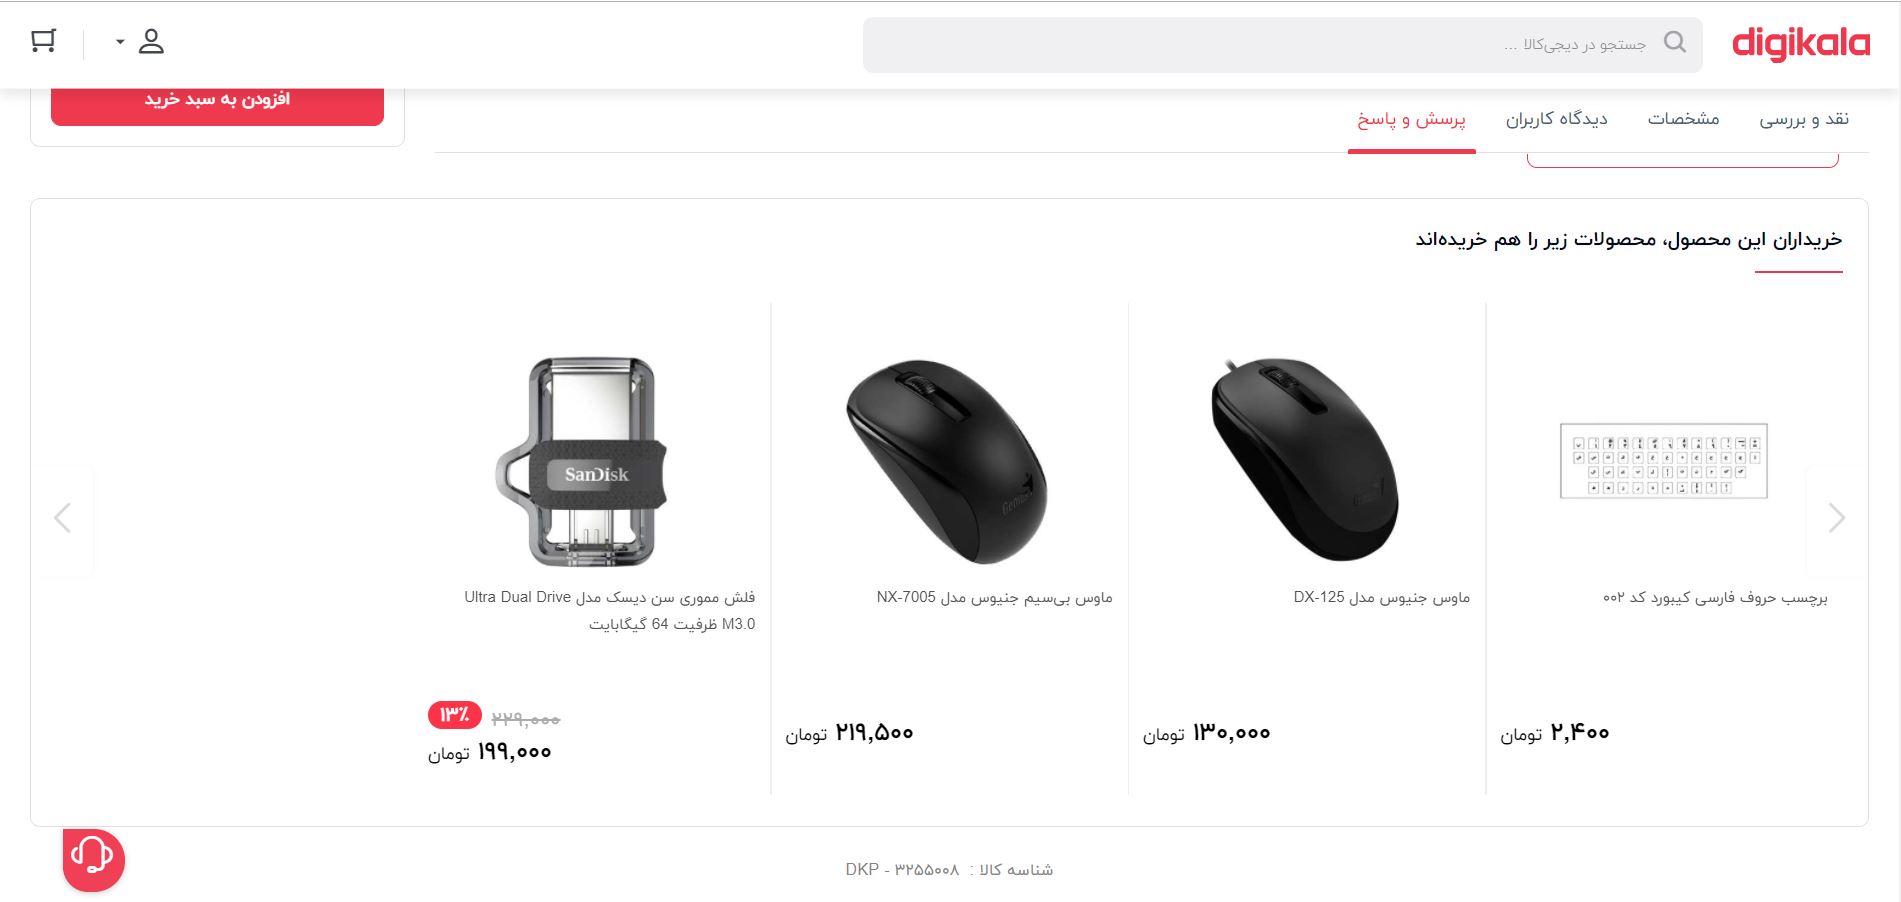 تصویری از بخش محصولات پیشنهادی دیجیکالا